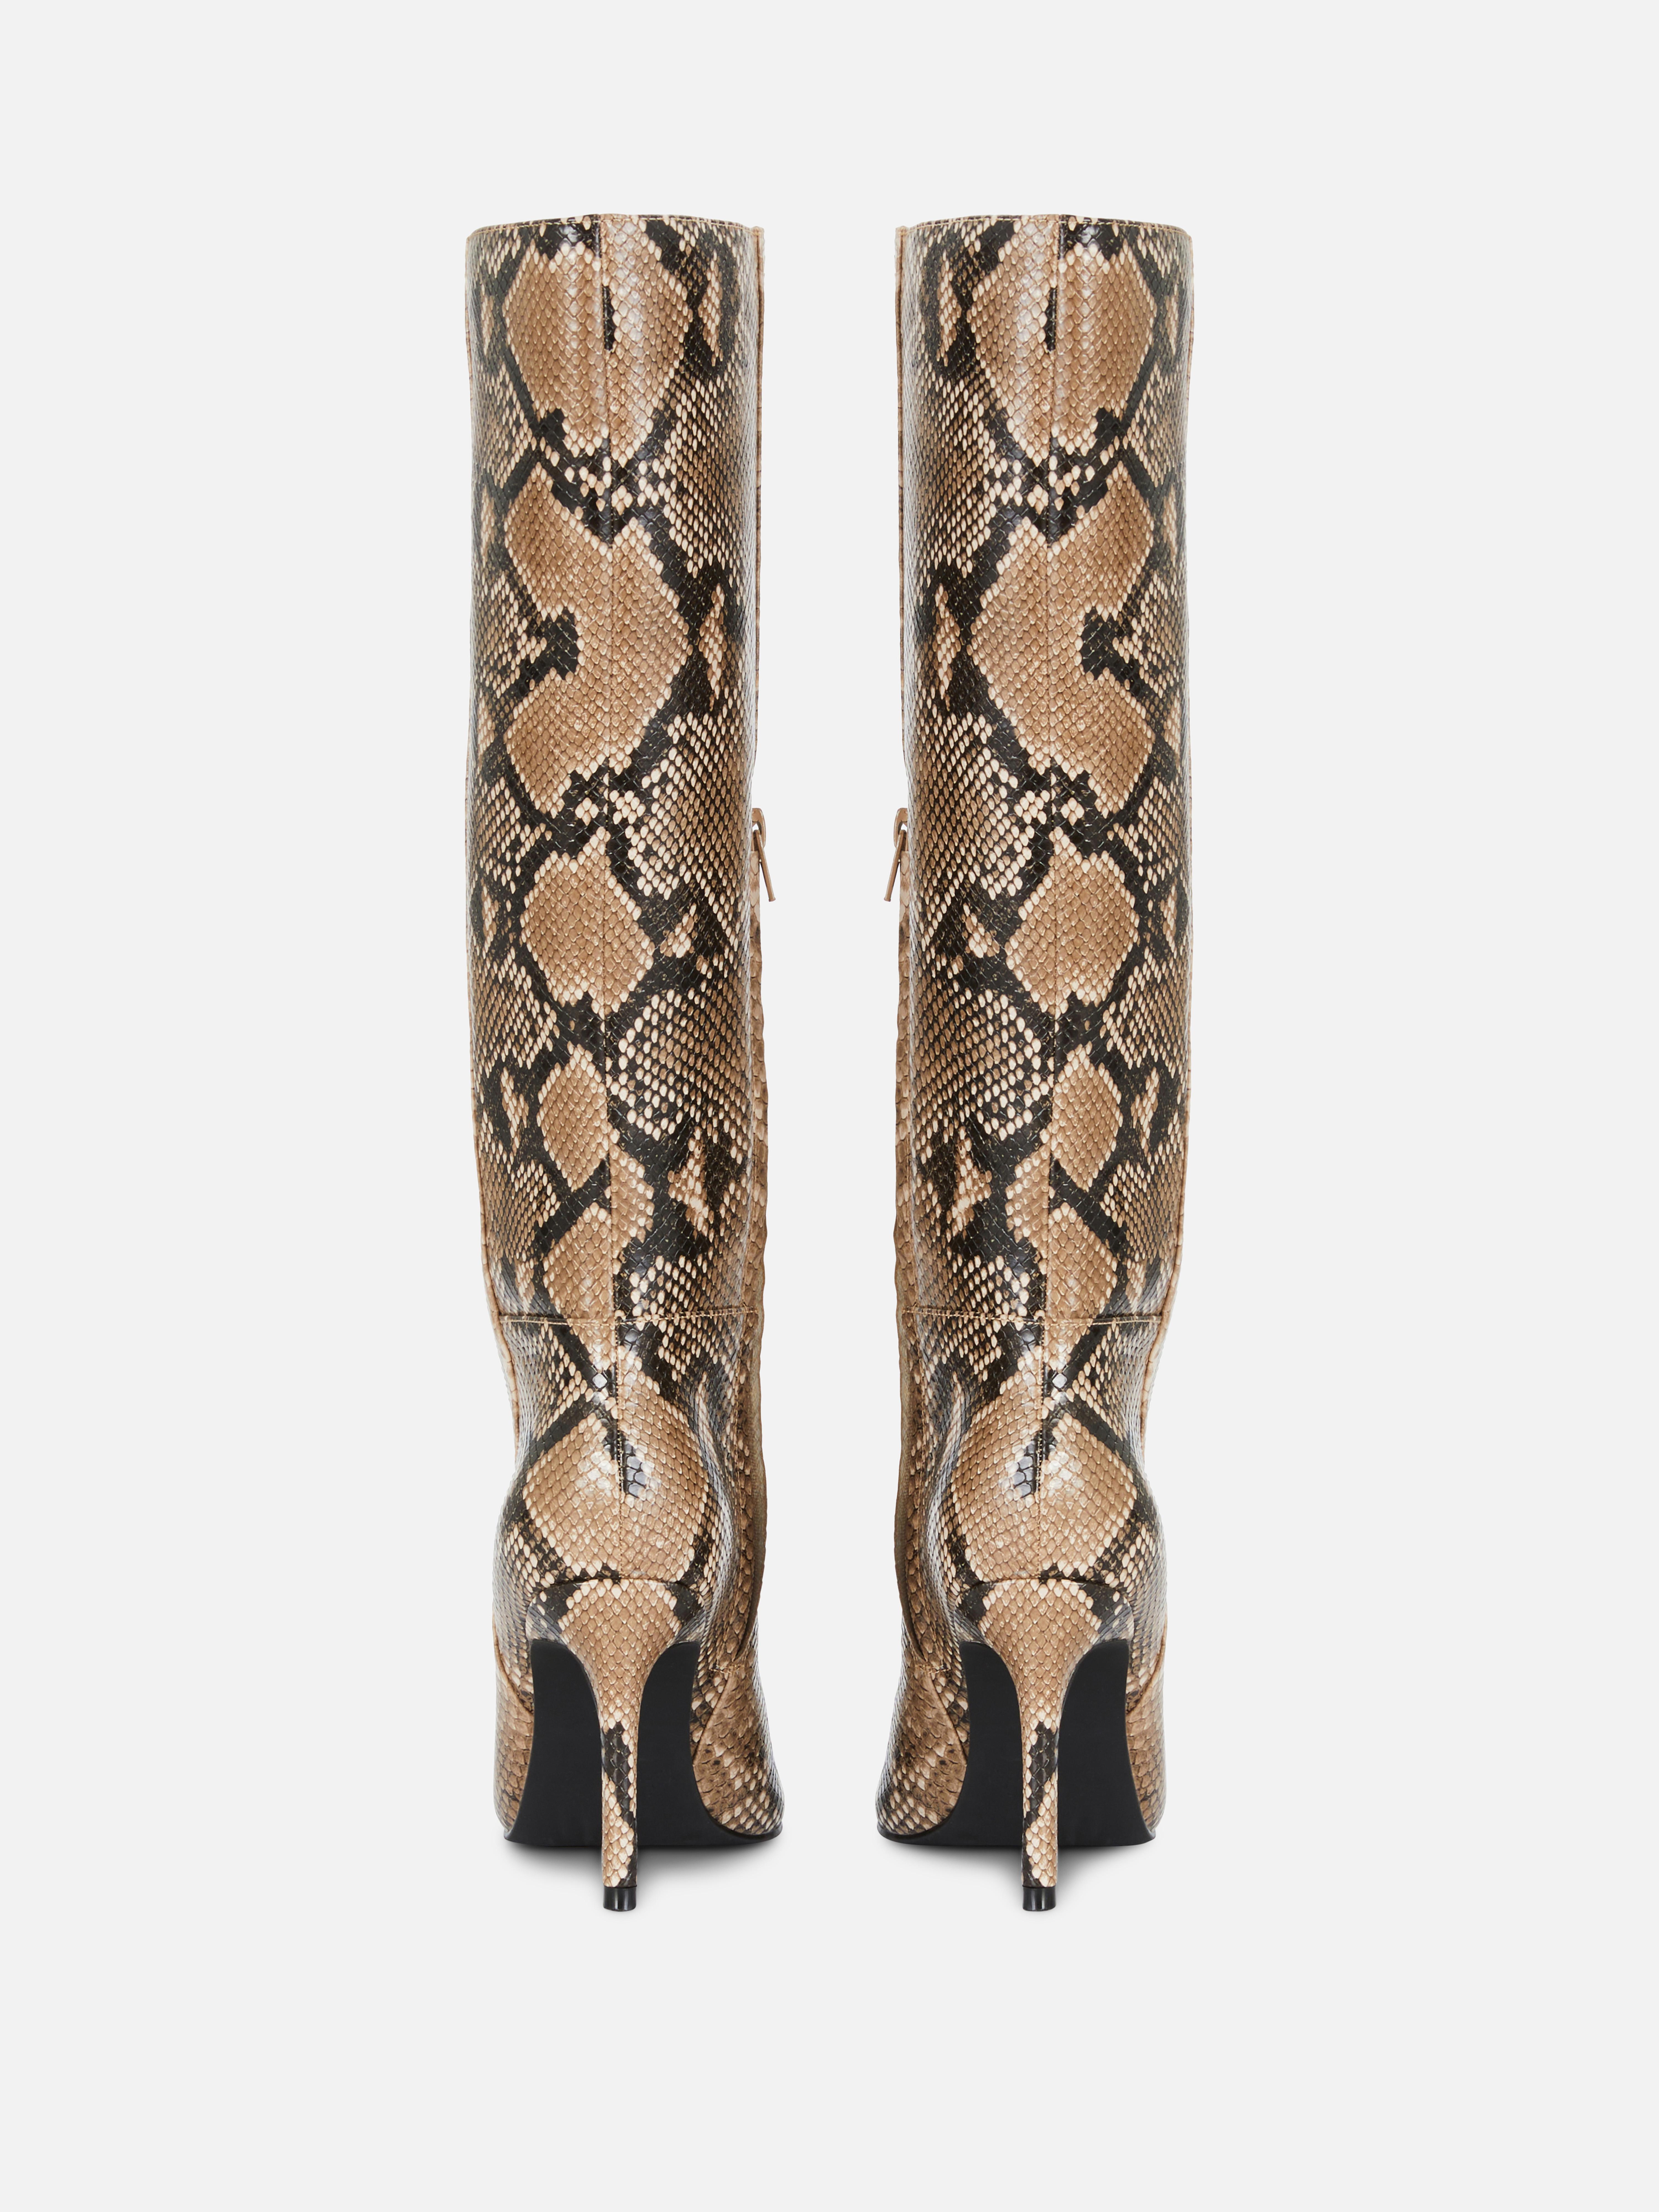 Kniehohe „Rita Ora“ Stiefel mit Schlangenmuster